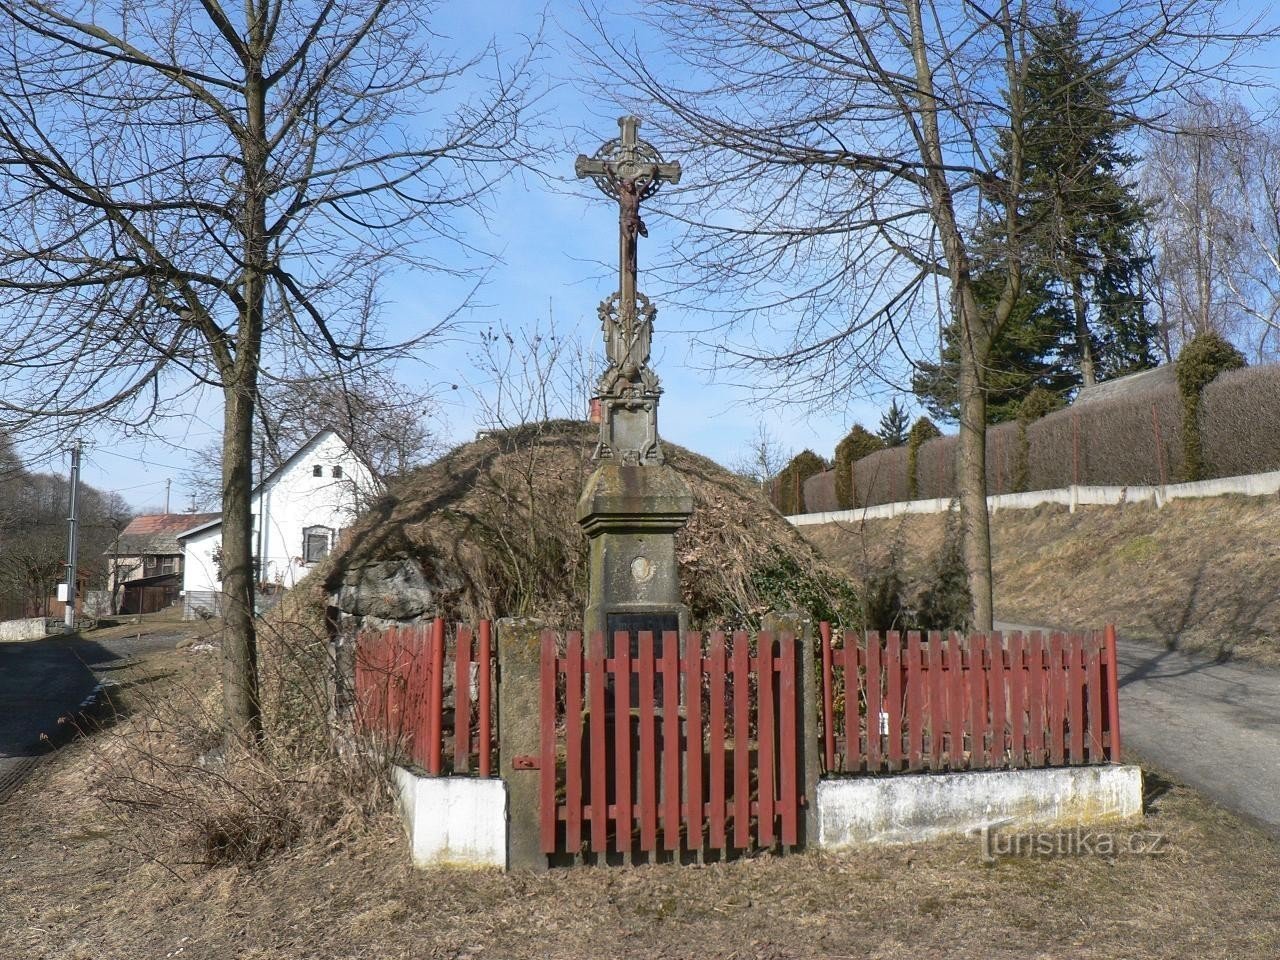 Velenovy, một cây thánh giá trong làng